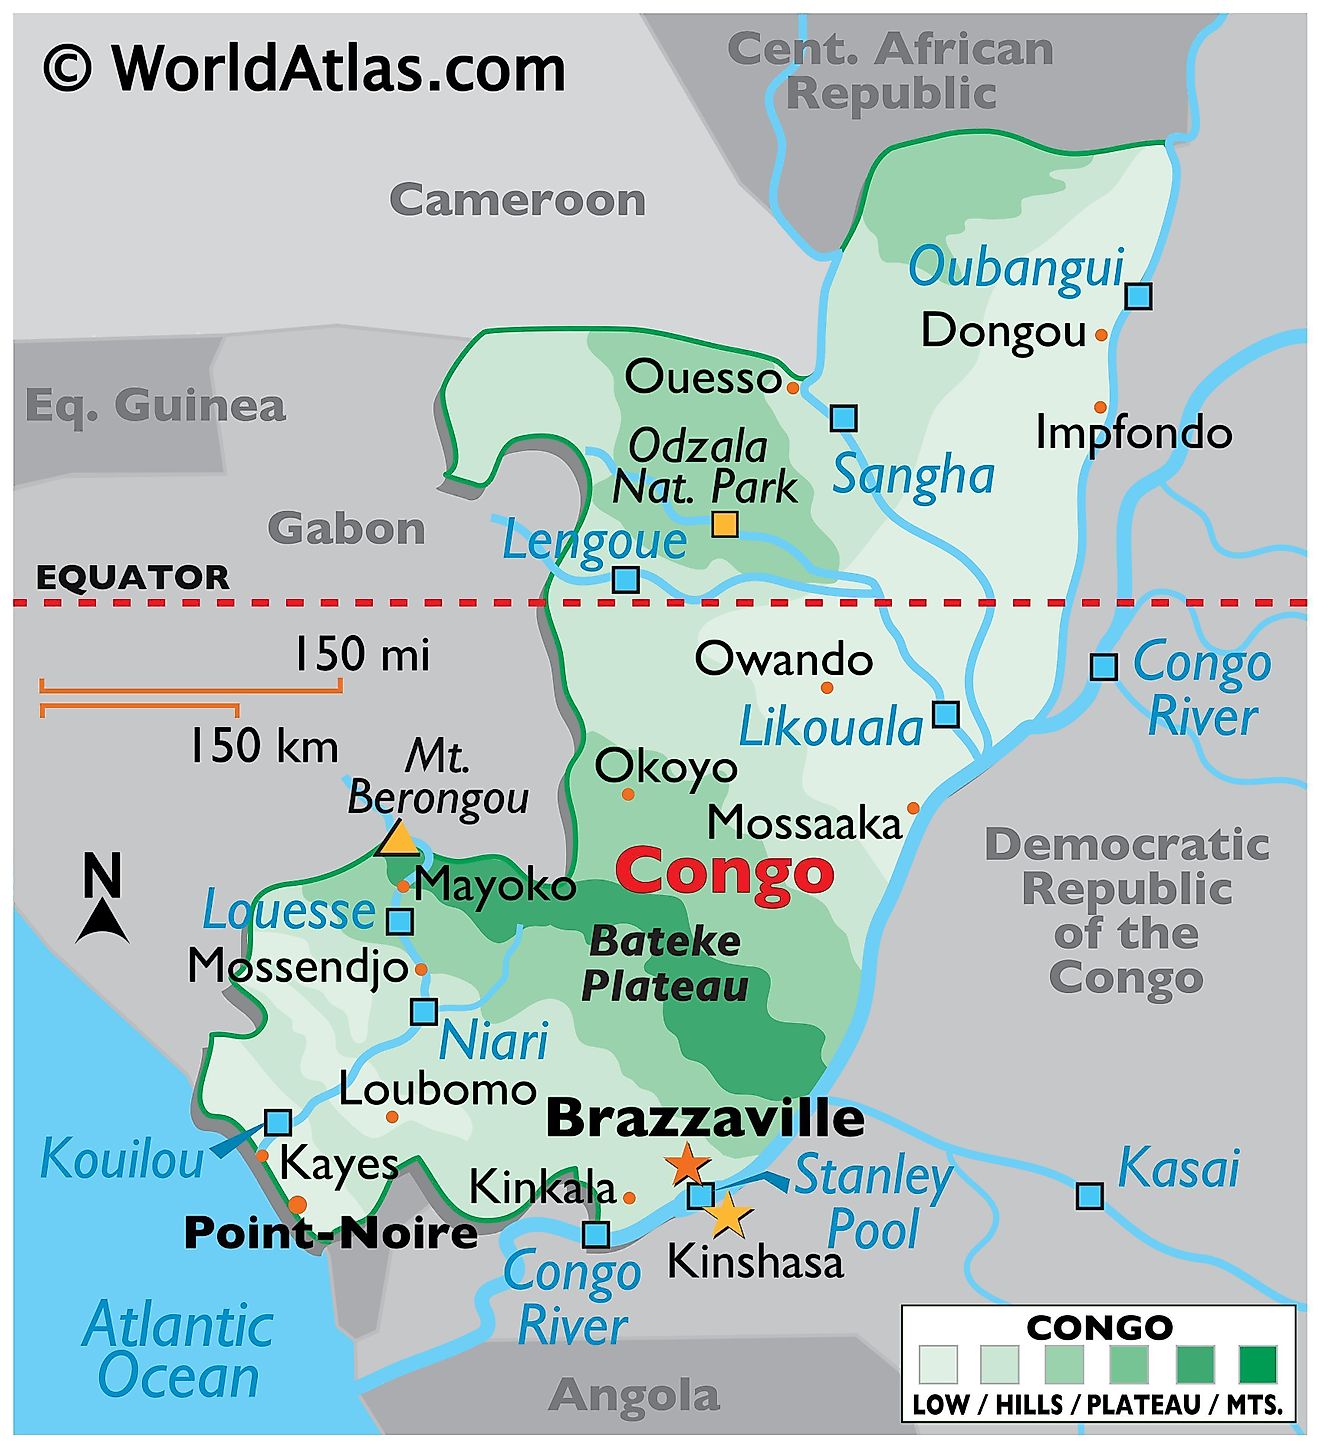 Mapa físico de la República del Congo con límites estatales, relieve, principales características físicas como ríos, lagos, montañas, puntos extremos, etc.